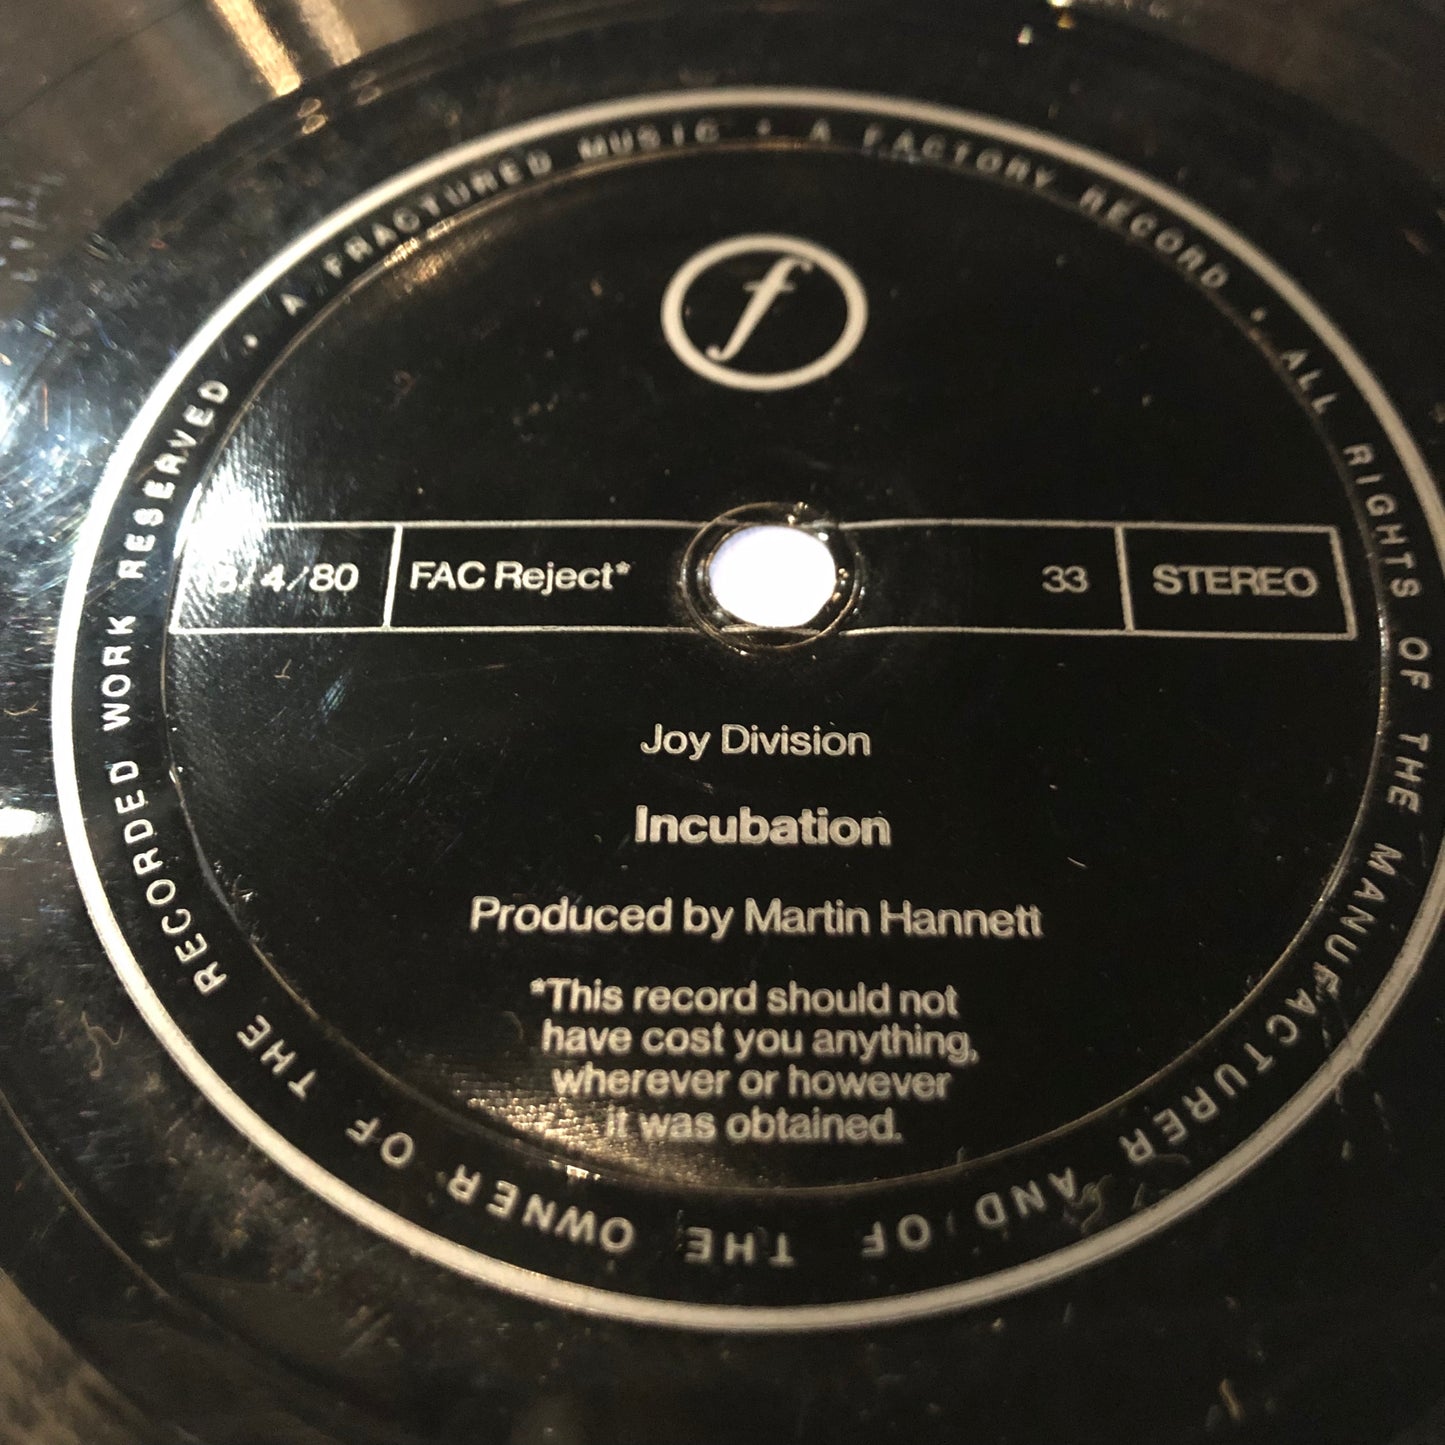 Joy Division "Komaniko" 7" Single (1980)